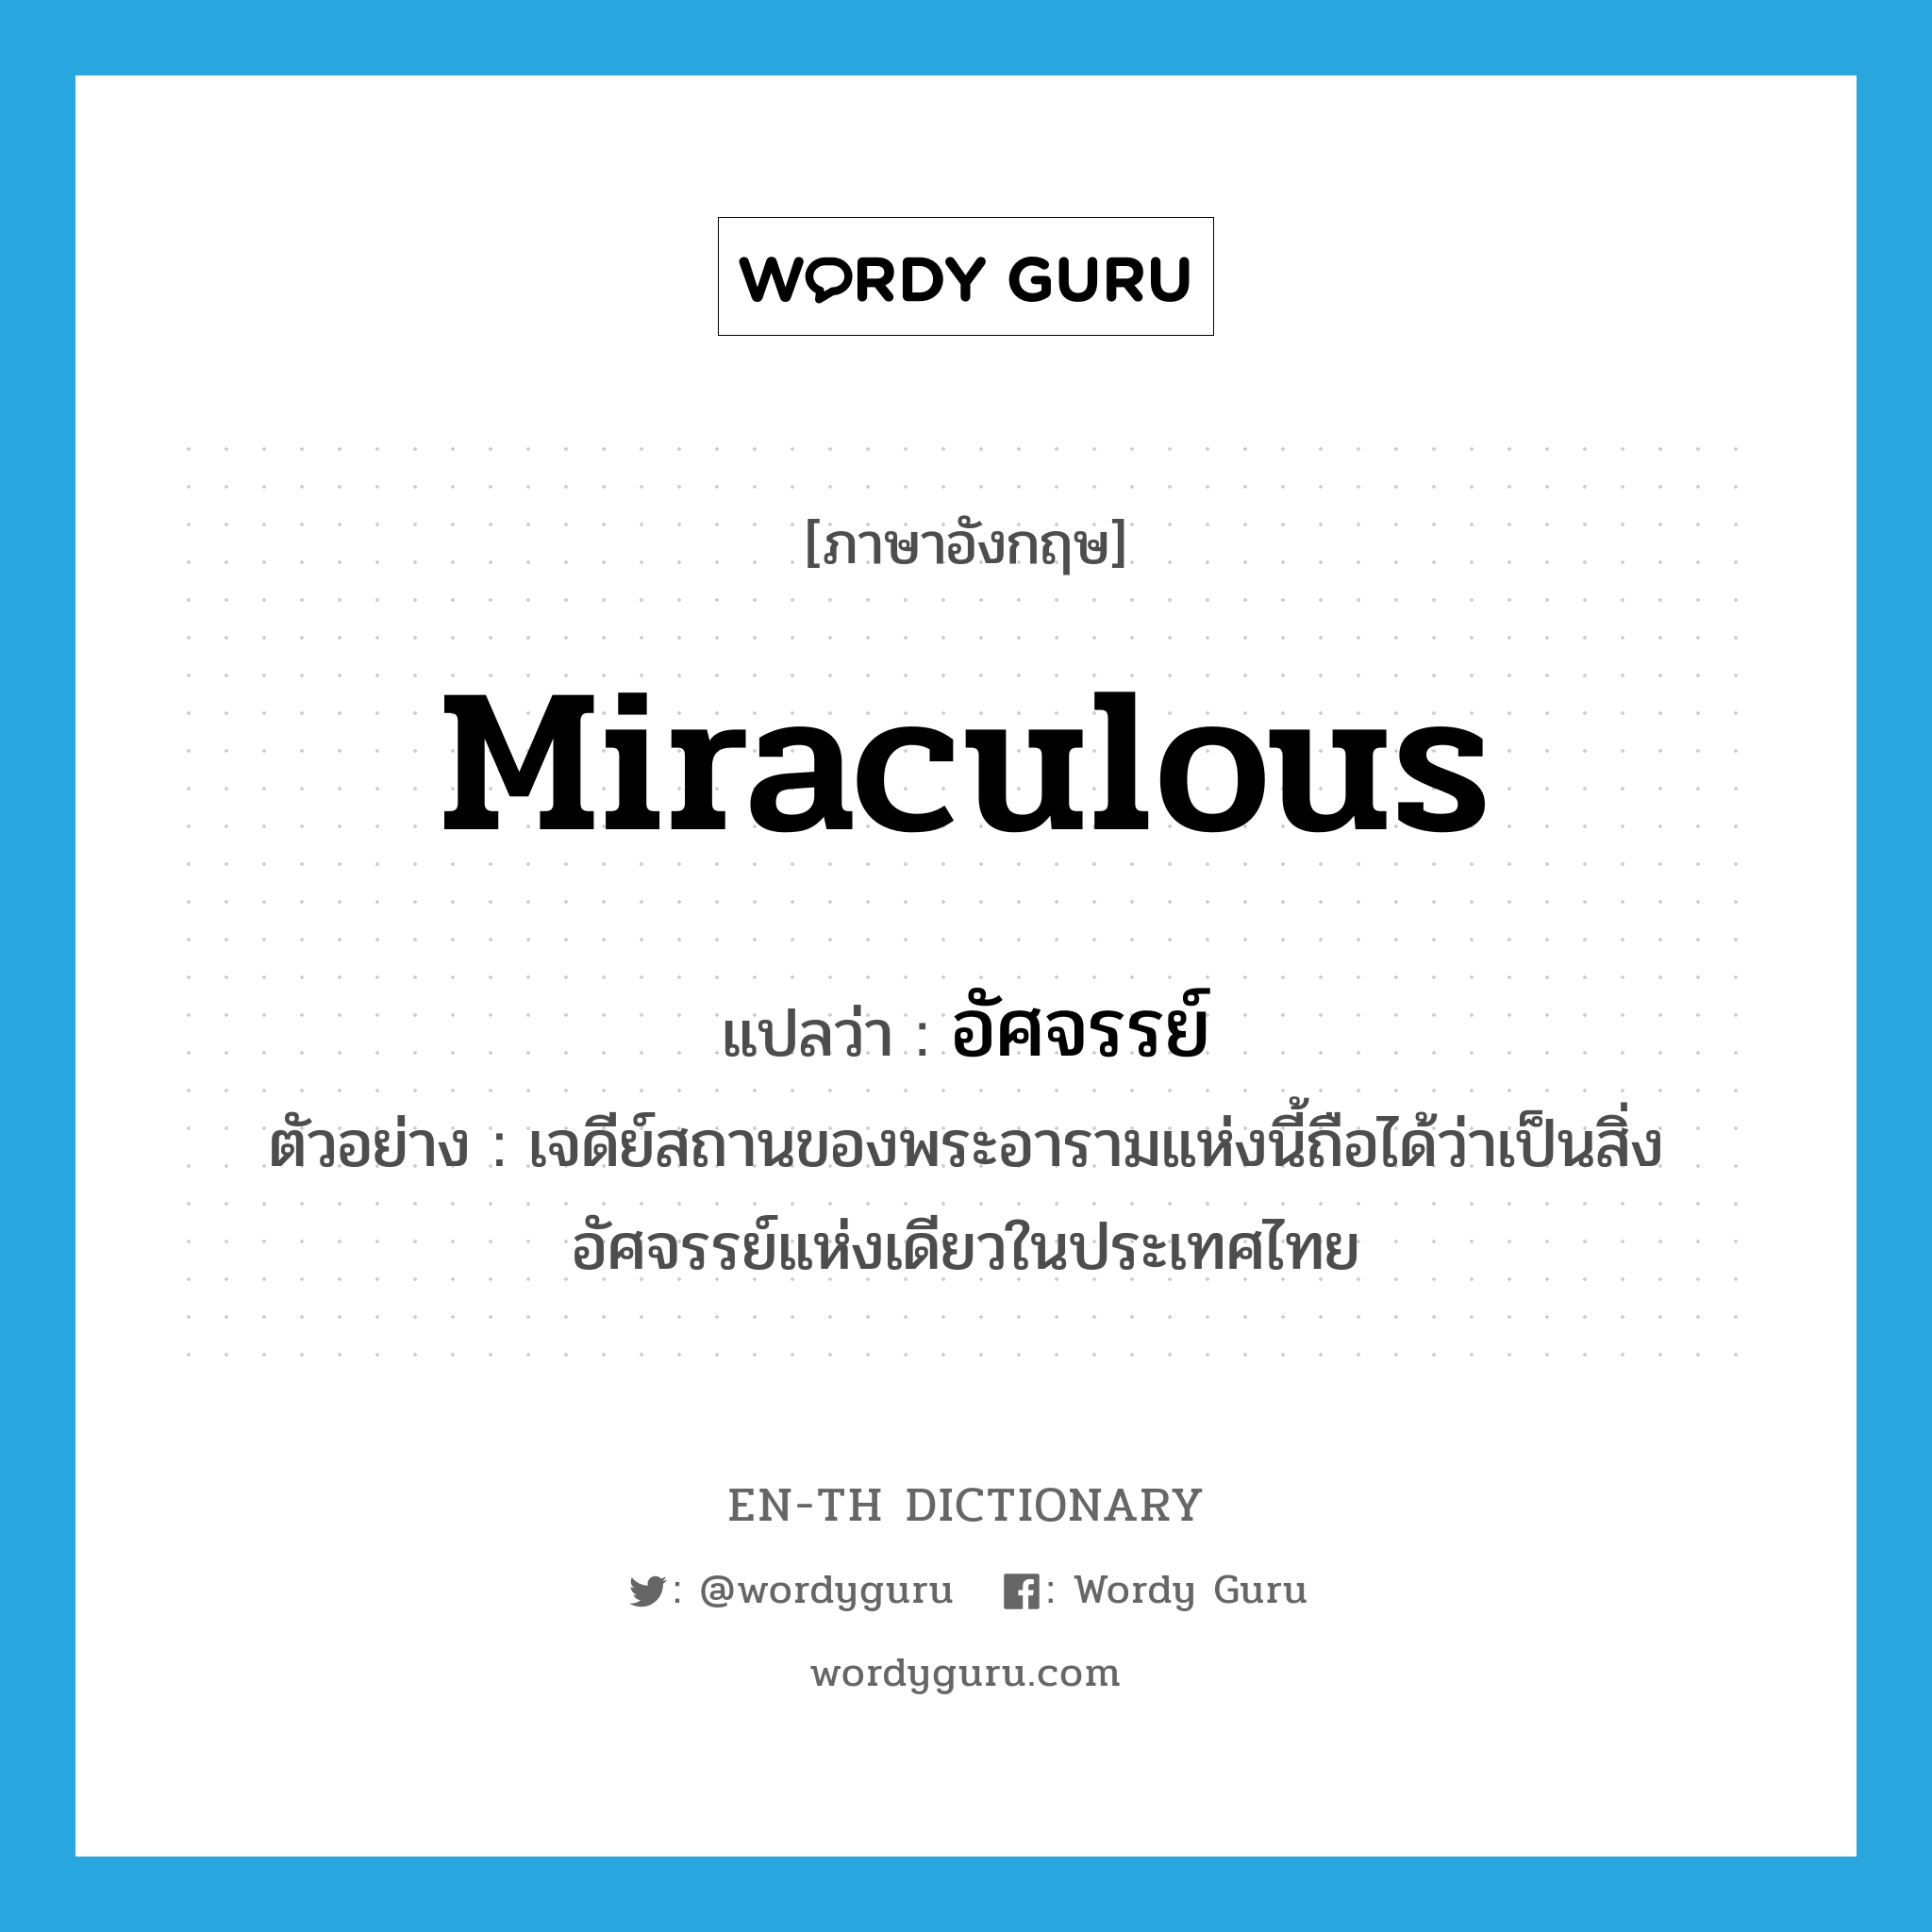 miraculous แปลว่า?, คำศัพท์ภาษาอังกฤษ miraculous แปลว่า อัศจรรย์ ประเภท ADJ ตัวอย่าง เจดีย์สถานของพระอารามแห่งนี้ถือได้ว่าเป็นสิ่งอัศจรรย์แห่งเดียวในประเทศไทย หมวด ADJ